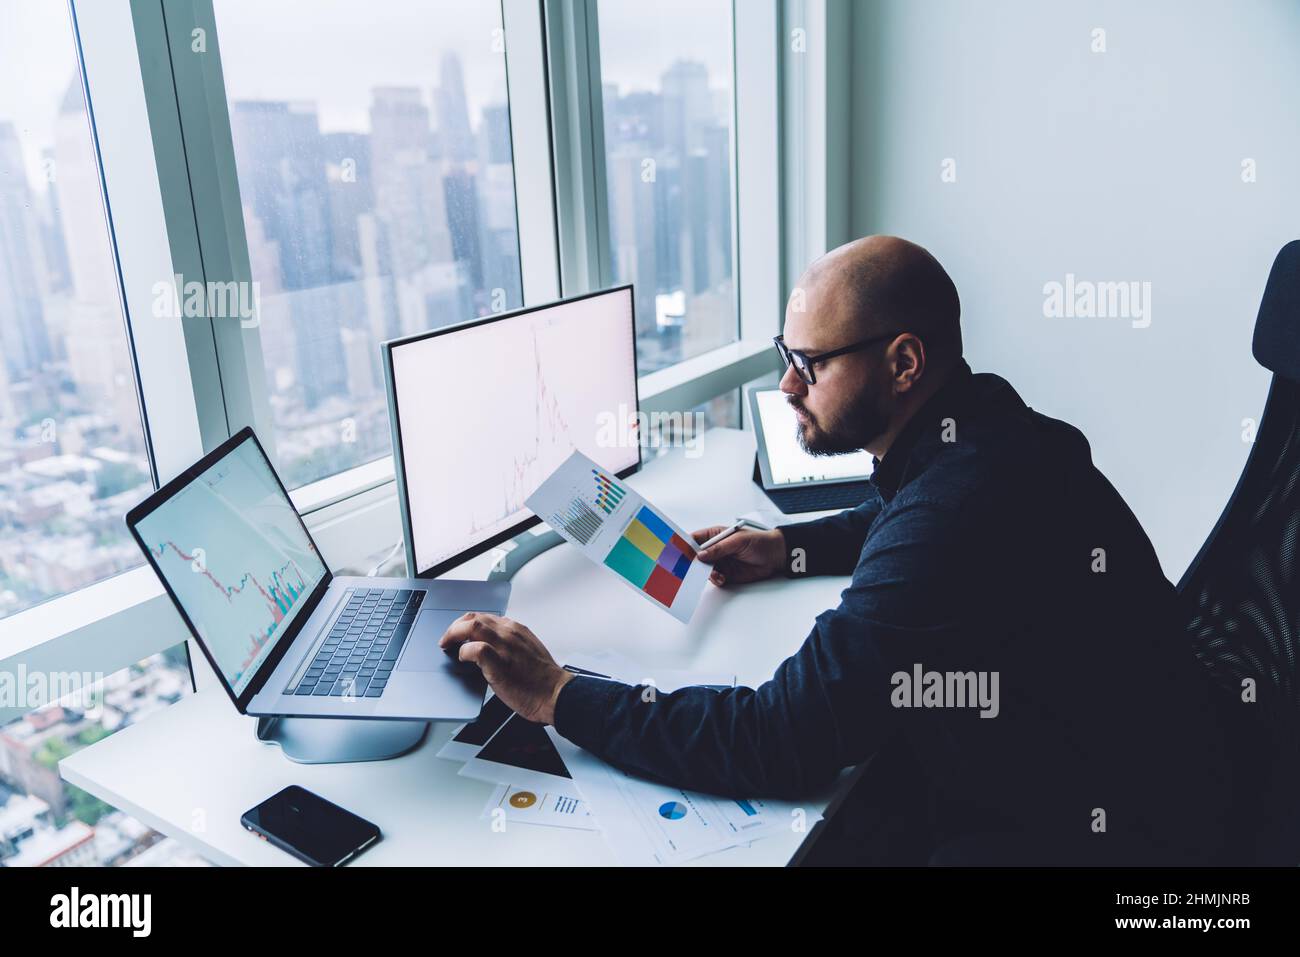 Analista maschile concentrato che lavora su un notebook in un ambiente di lavoro moderno Foto Stock